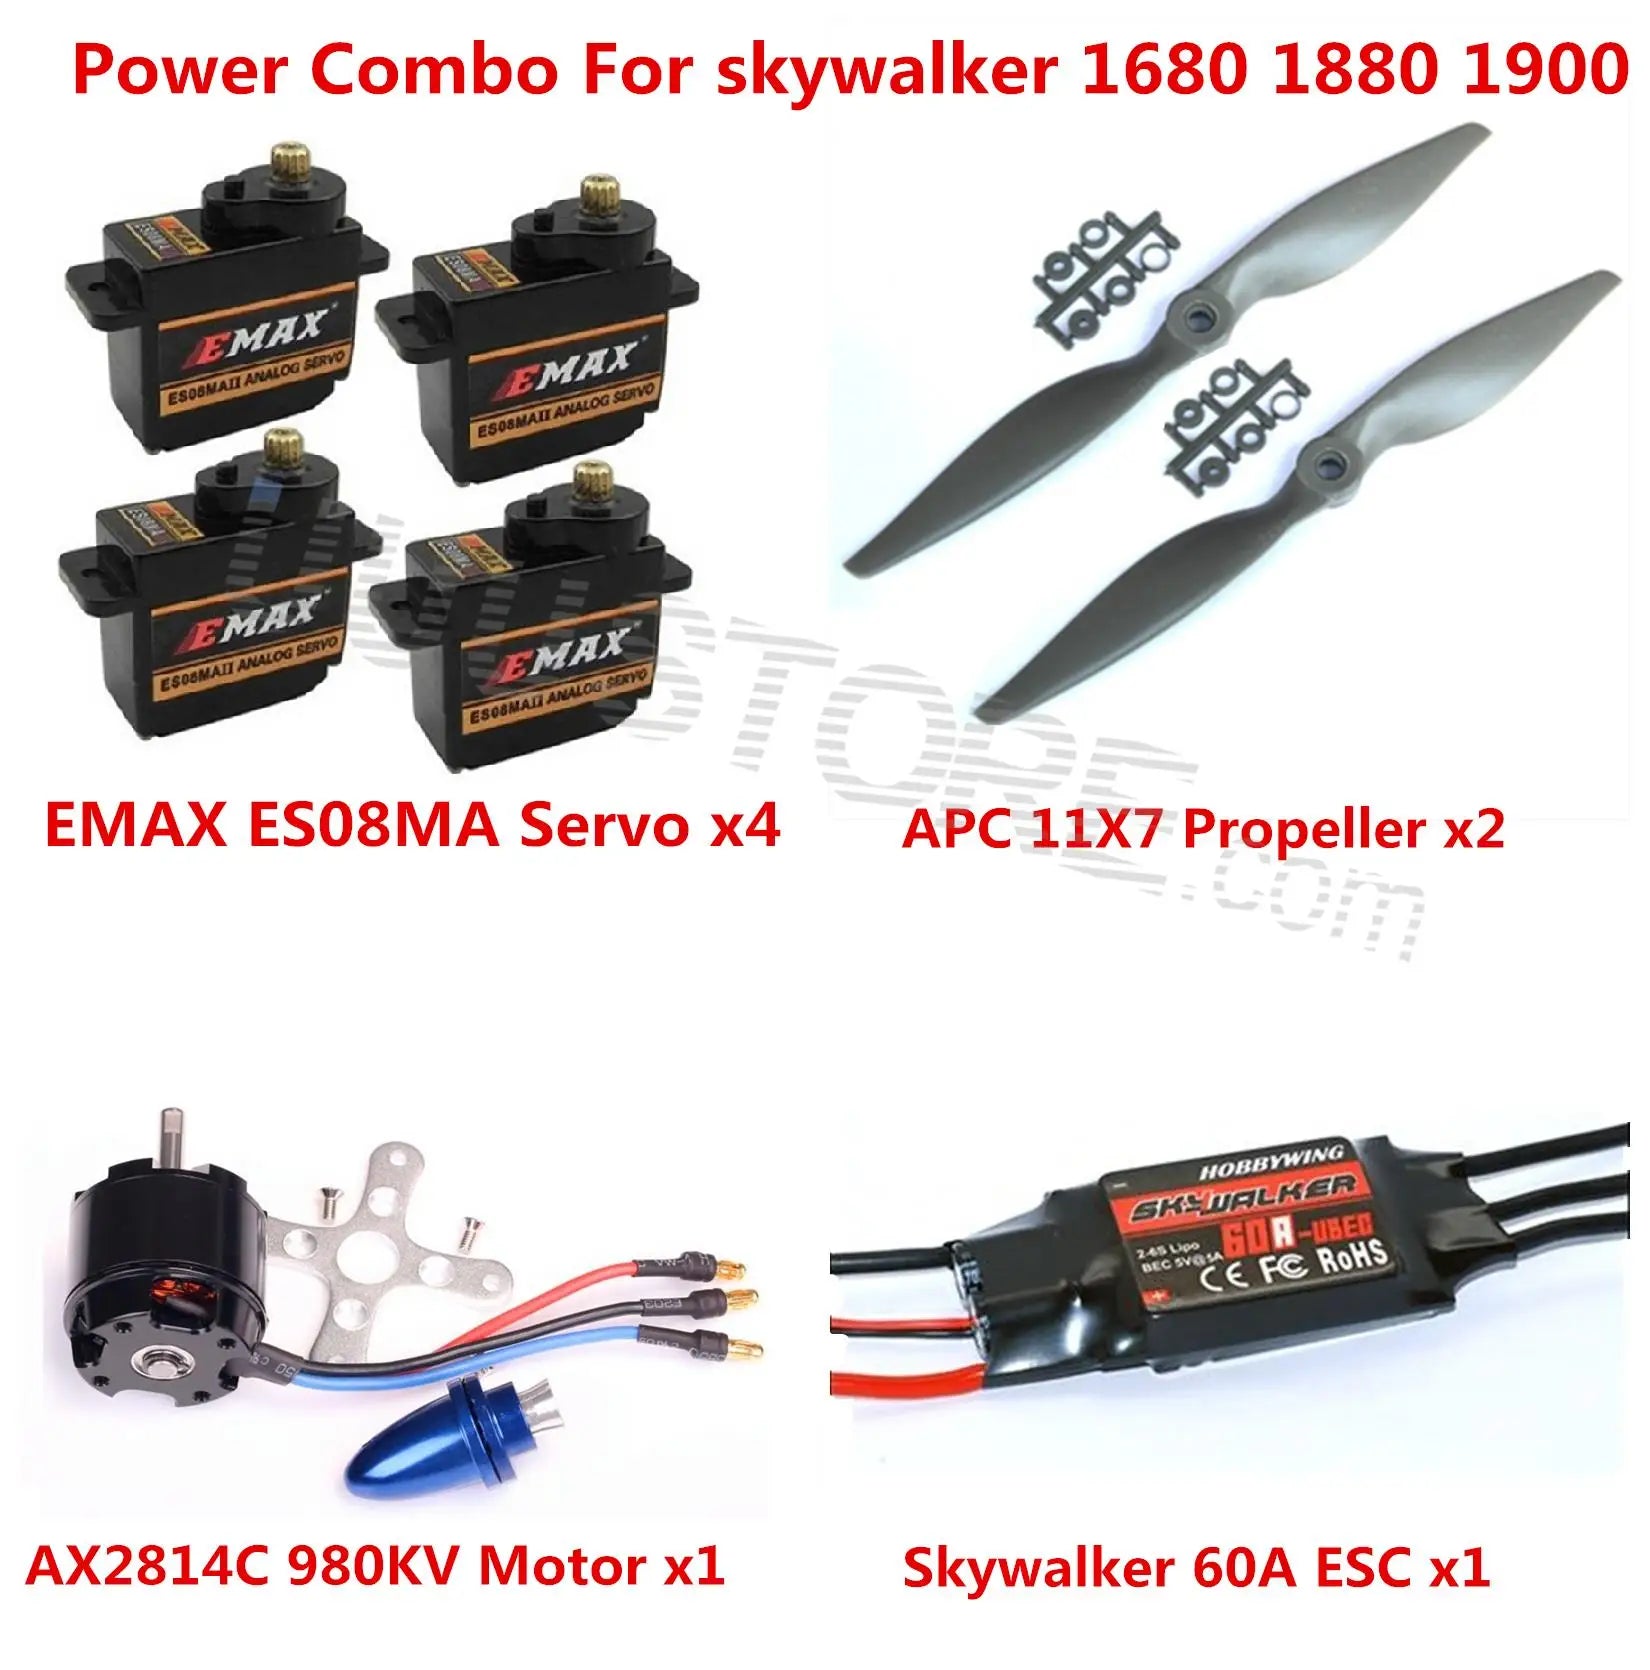 Power Combo Kit For Skywalker 1680